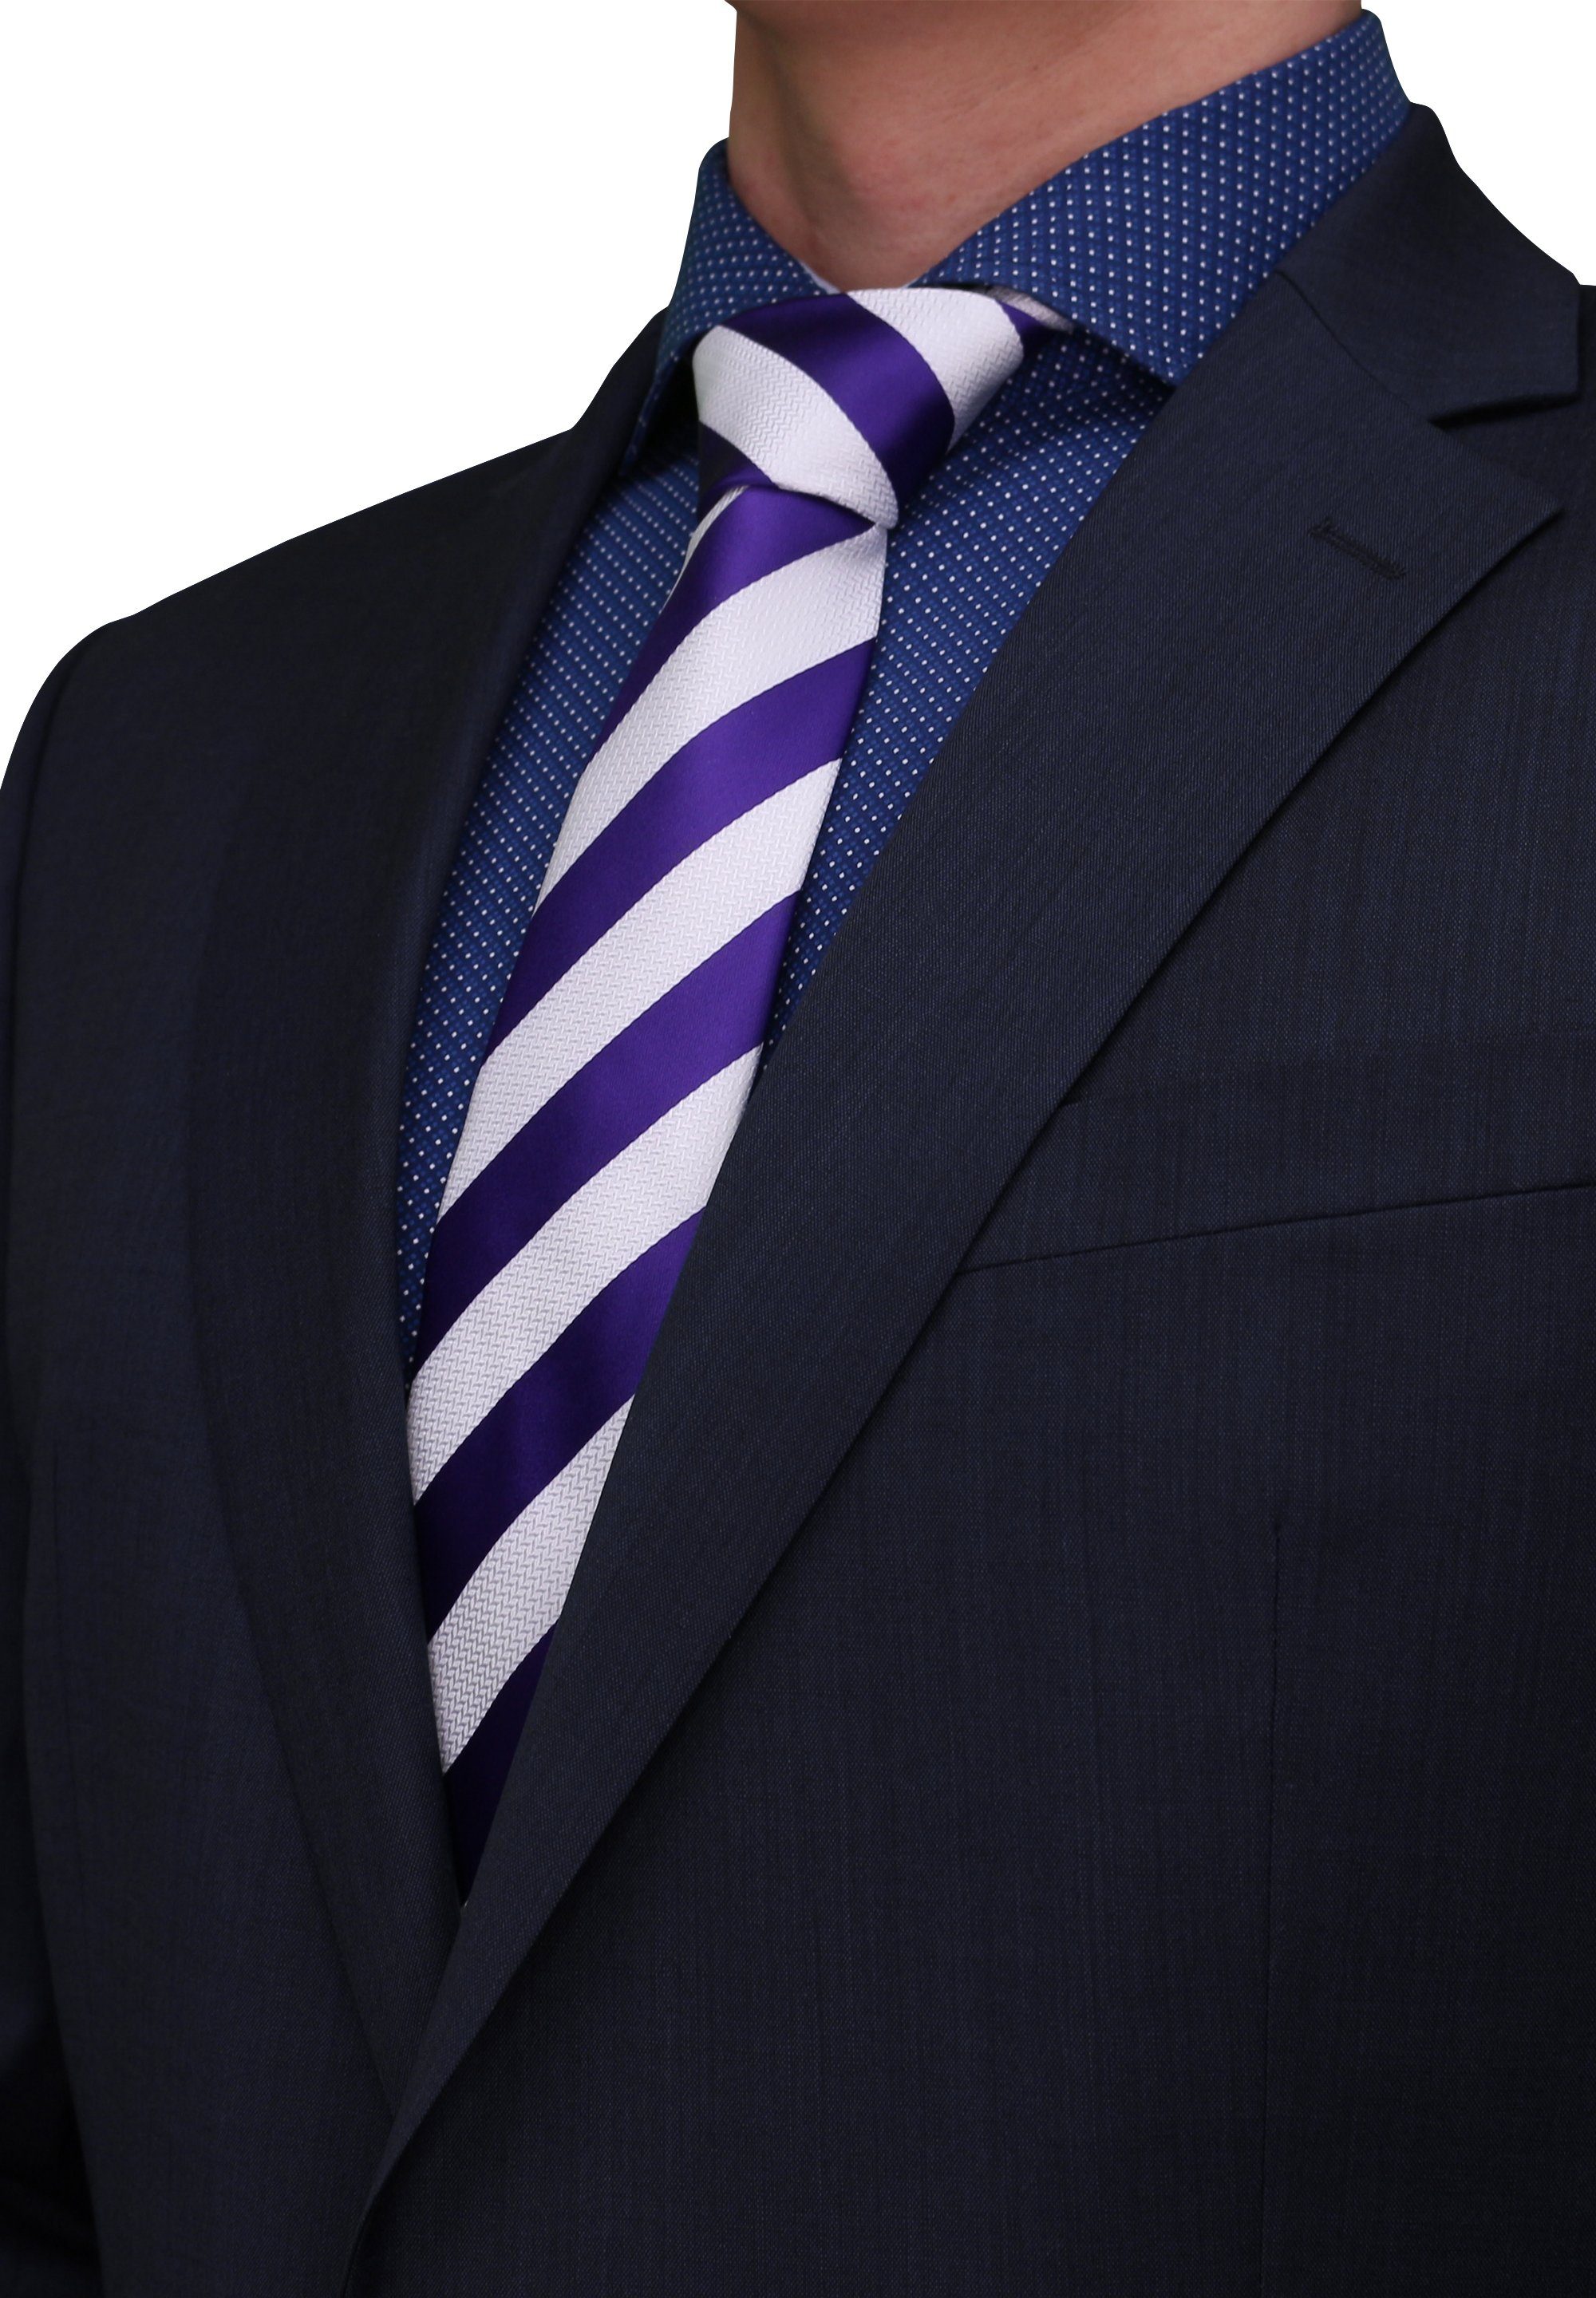 Fabio Farini Krawatte in mit gestreifte Tie Box, oder Streifen 6cm (6cm), Gestreift) Weiß/Violett Krawatte (ohne Breite Herren Schmal - 8cm